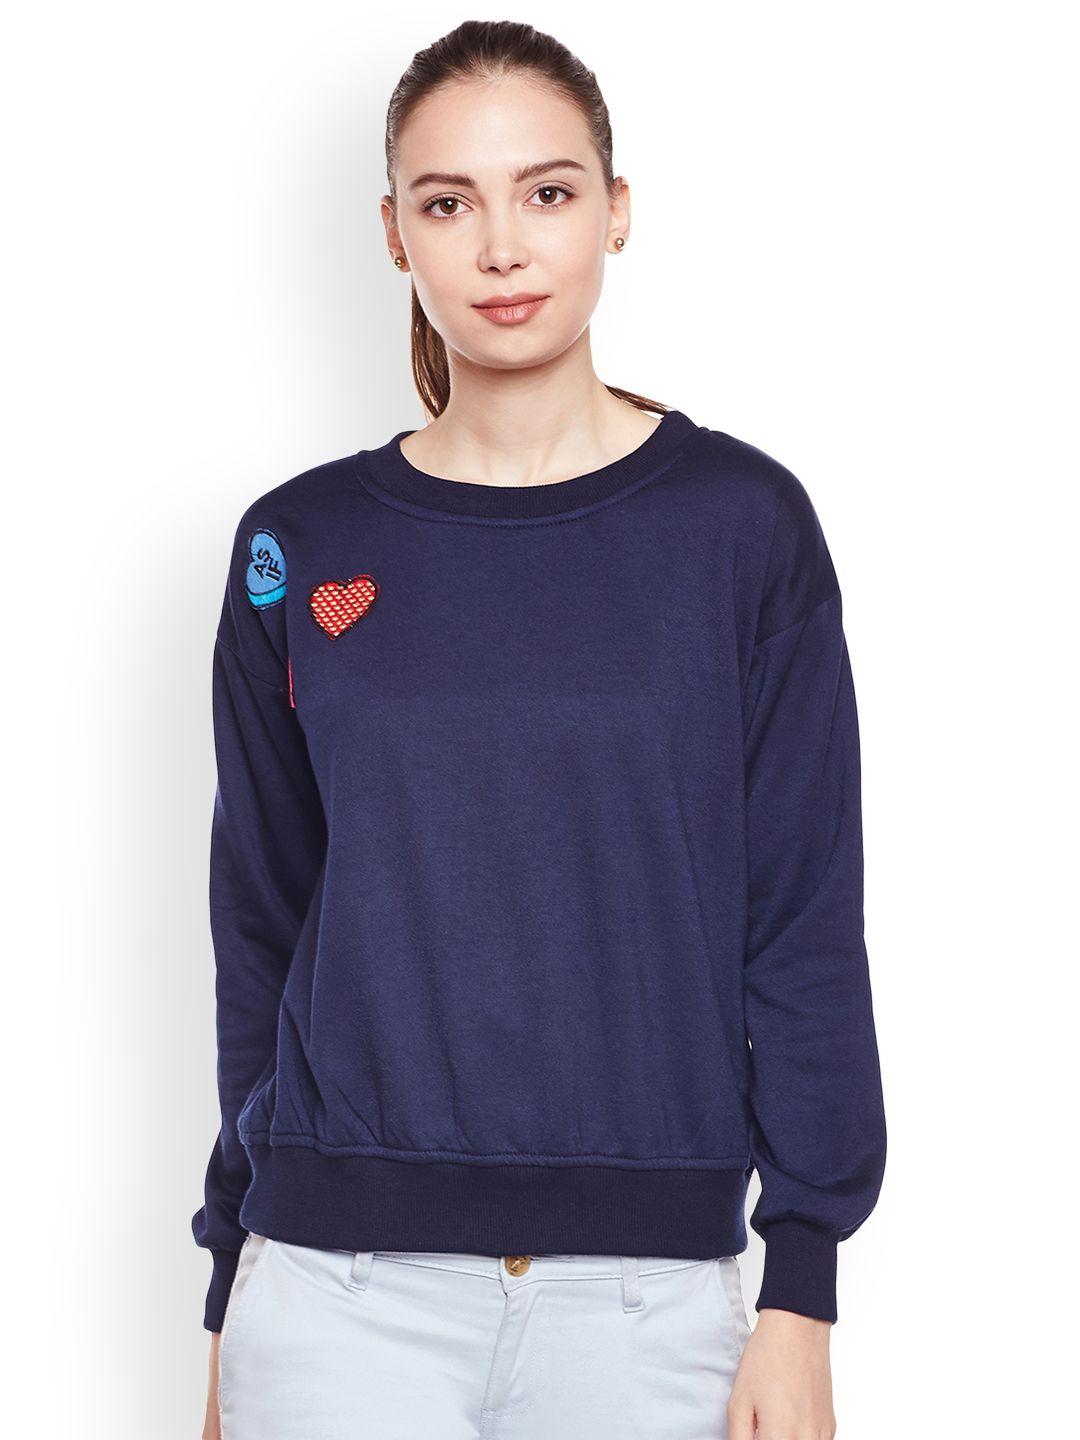 belle fille women navy blue solid sweatshirt